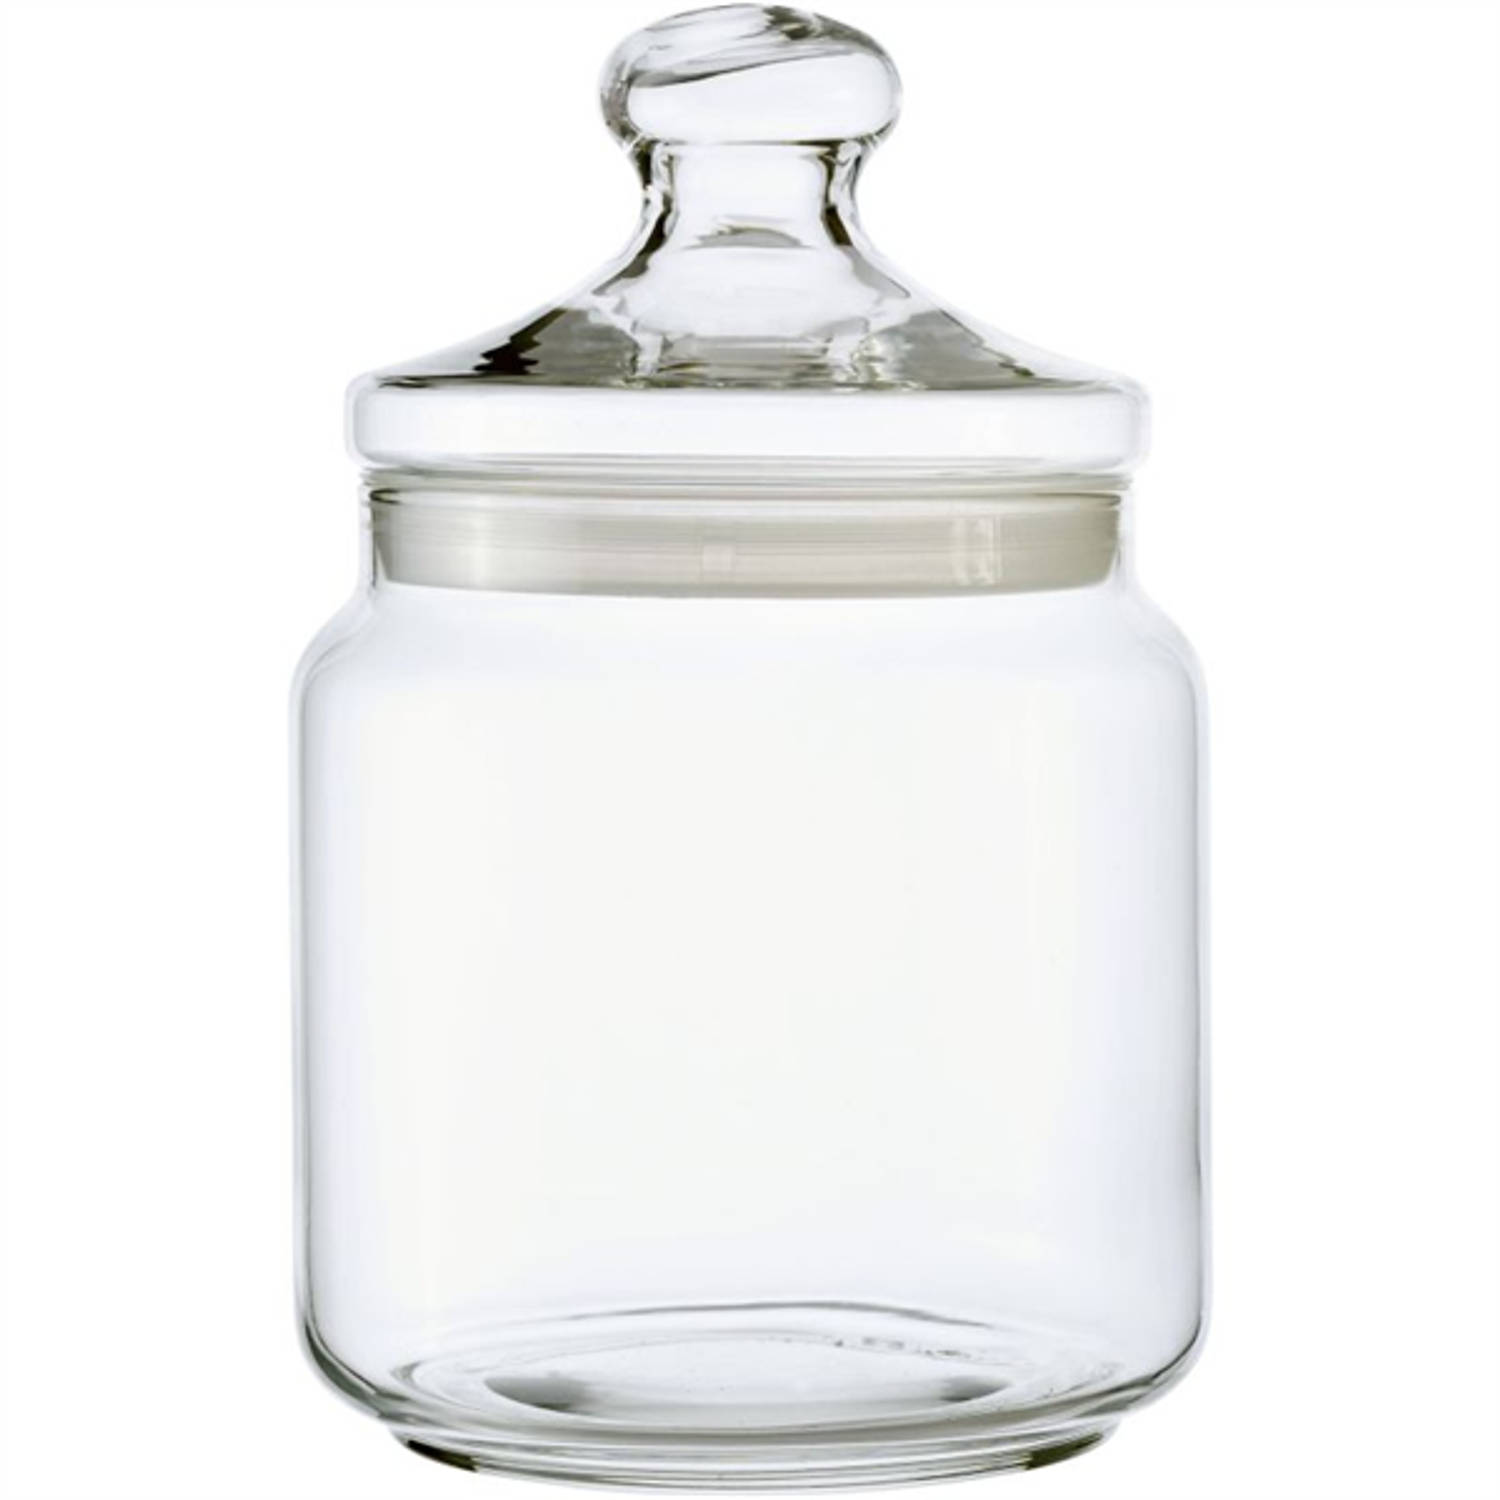 Luminarc Club Snoeppot - Glazen Voorraadpot met glazen deksel - Afsluitbaar - 1.5 liter